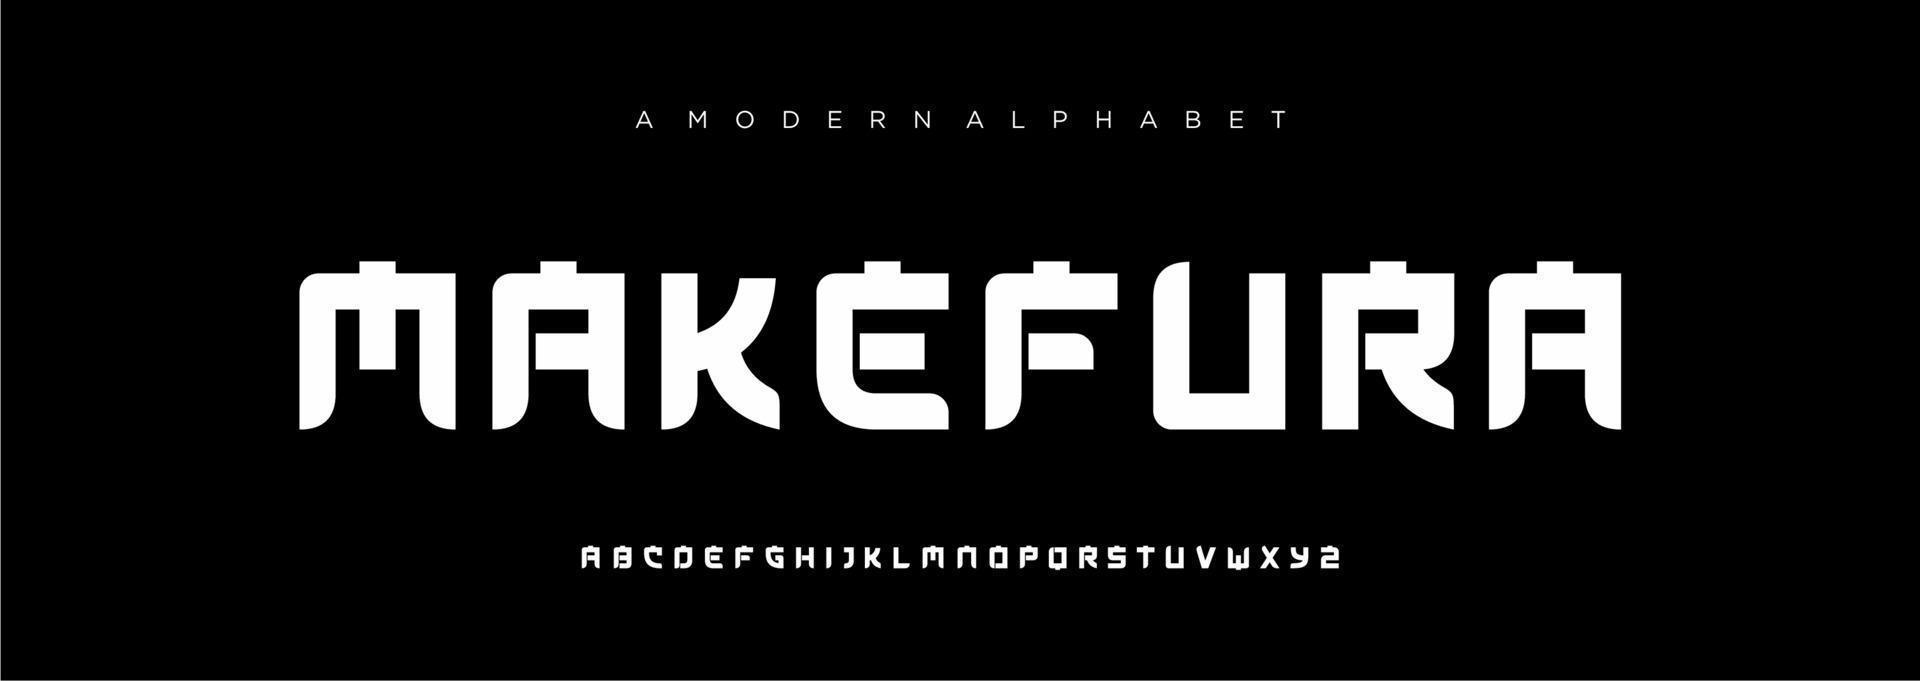 Japans modern alfabet lettertype, Japan Aziatisch fonts stijl Latijns ontwerp vector